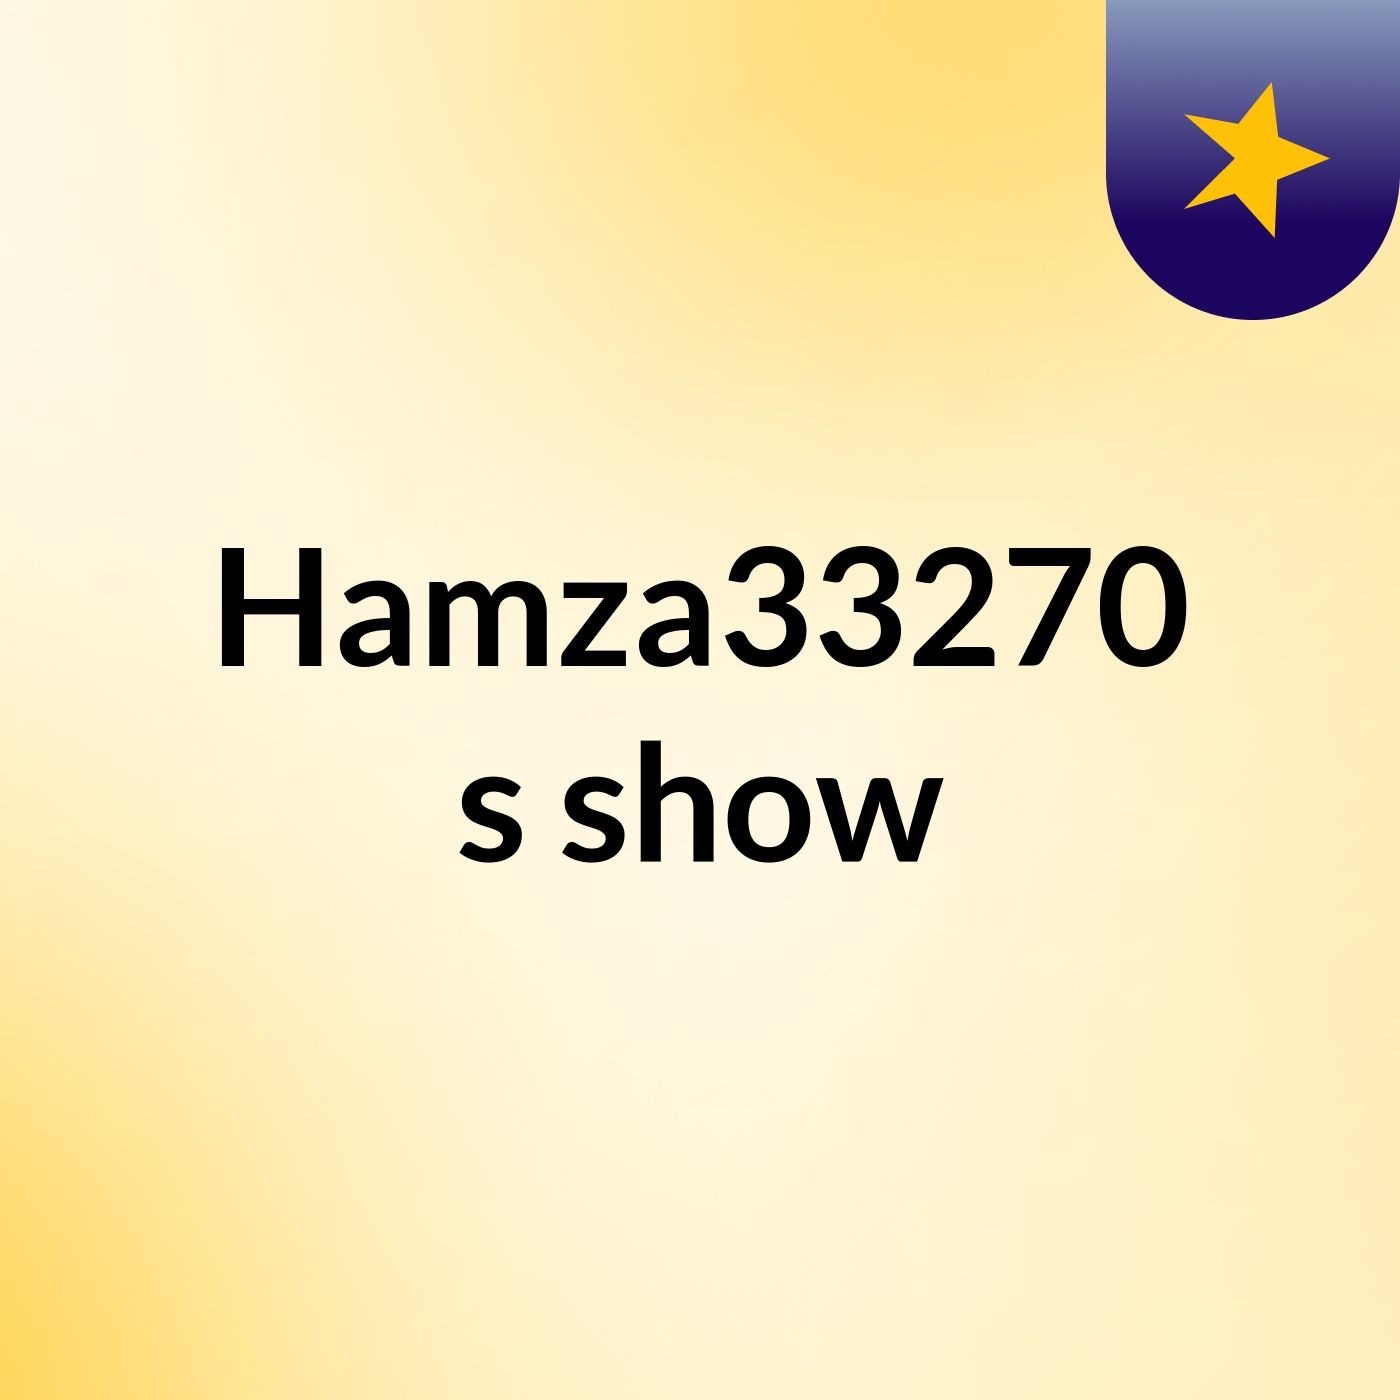 Hamza33270's show